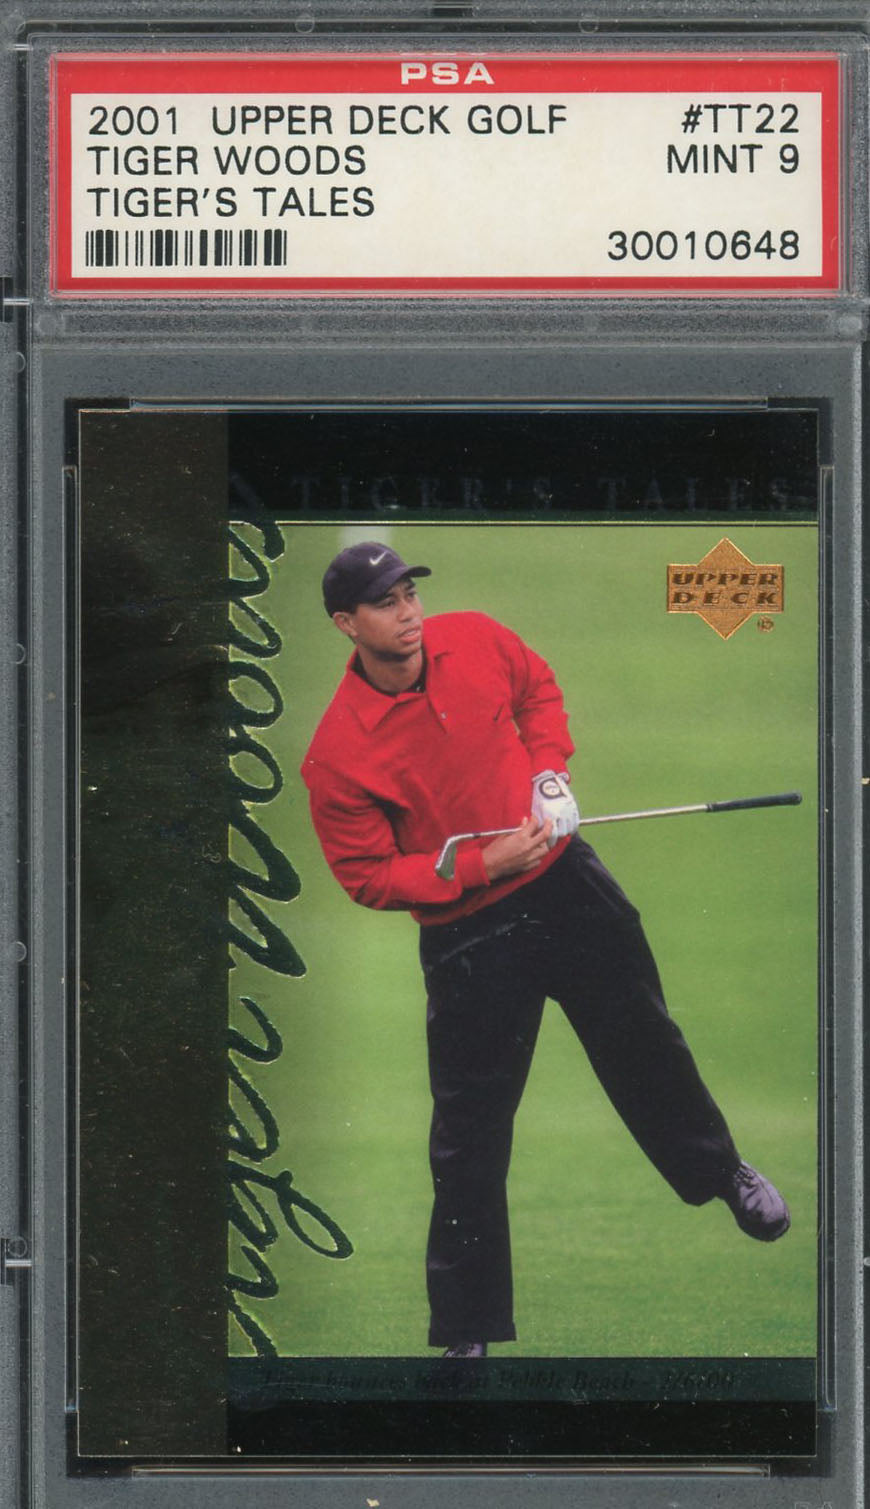 Tiger Woods 2001 Upper Deck Tiger's Tales Golf Card #TT22 Graded PSA 9 MINT-Powers Sports Memorabilia